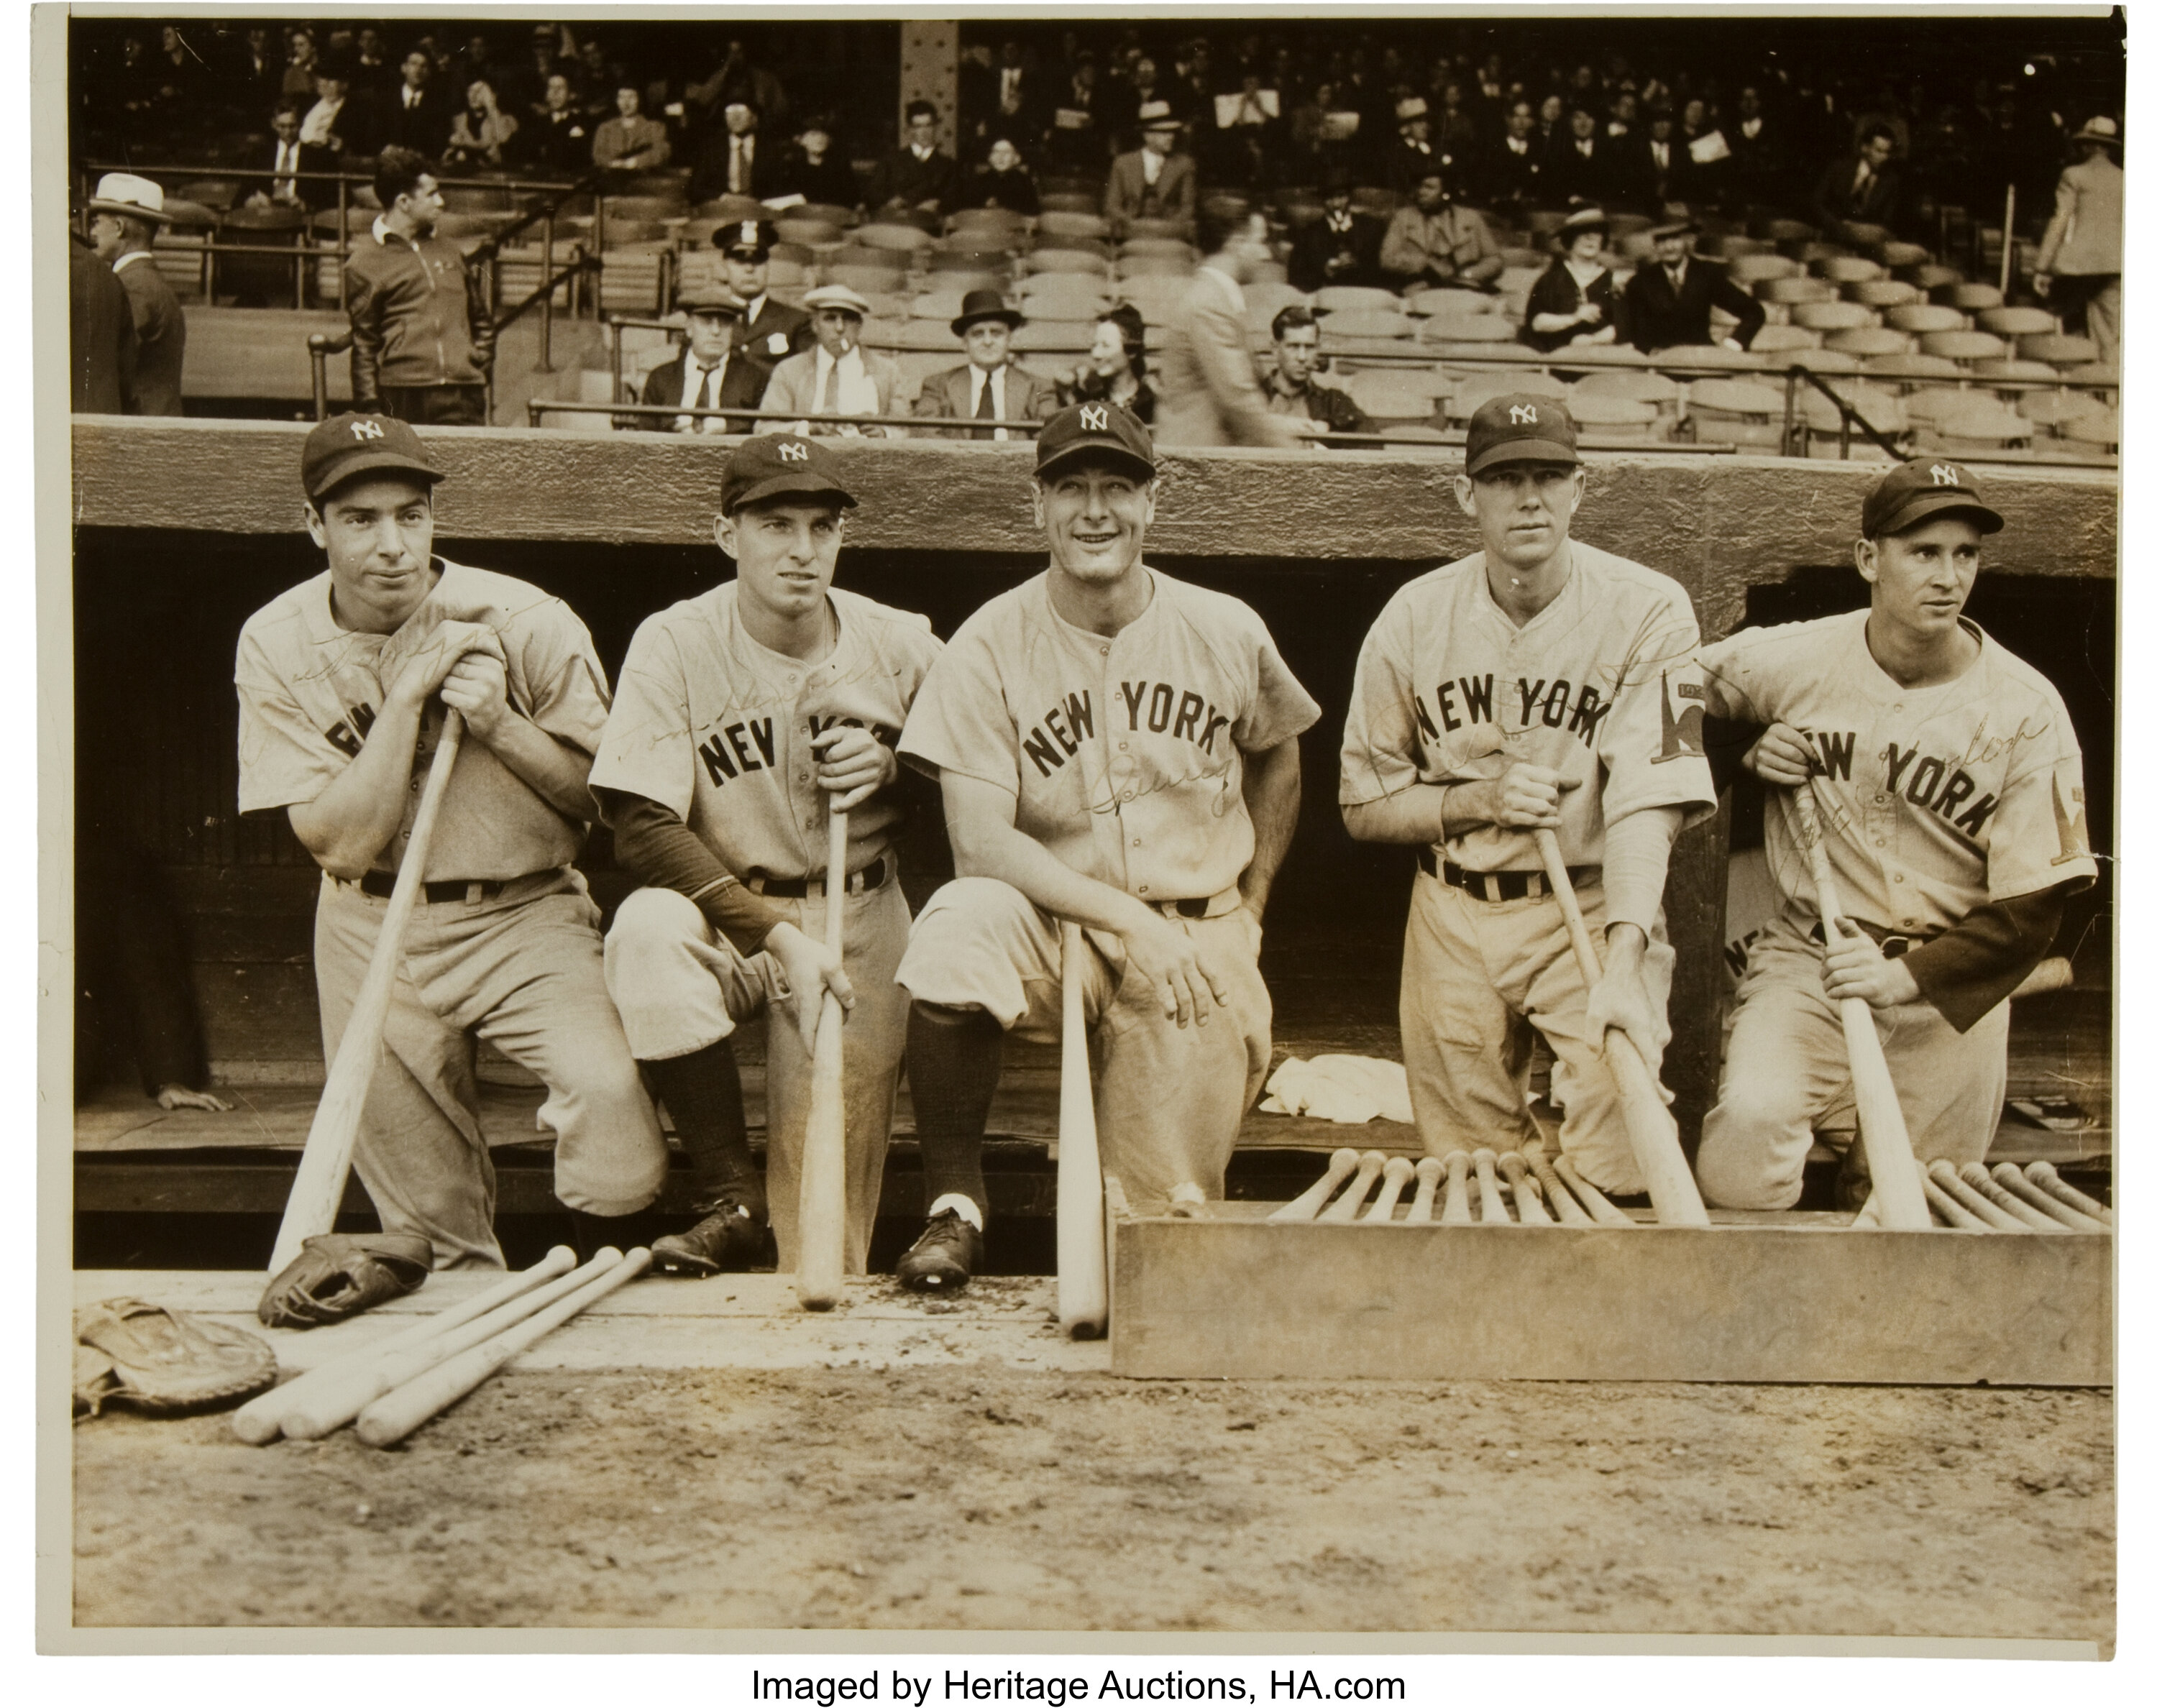 Download Yankees 1938 Team Wallpaper